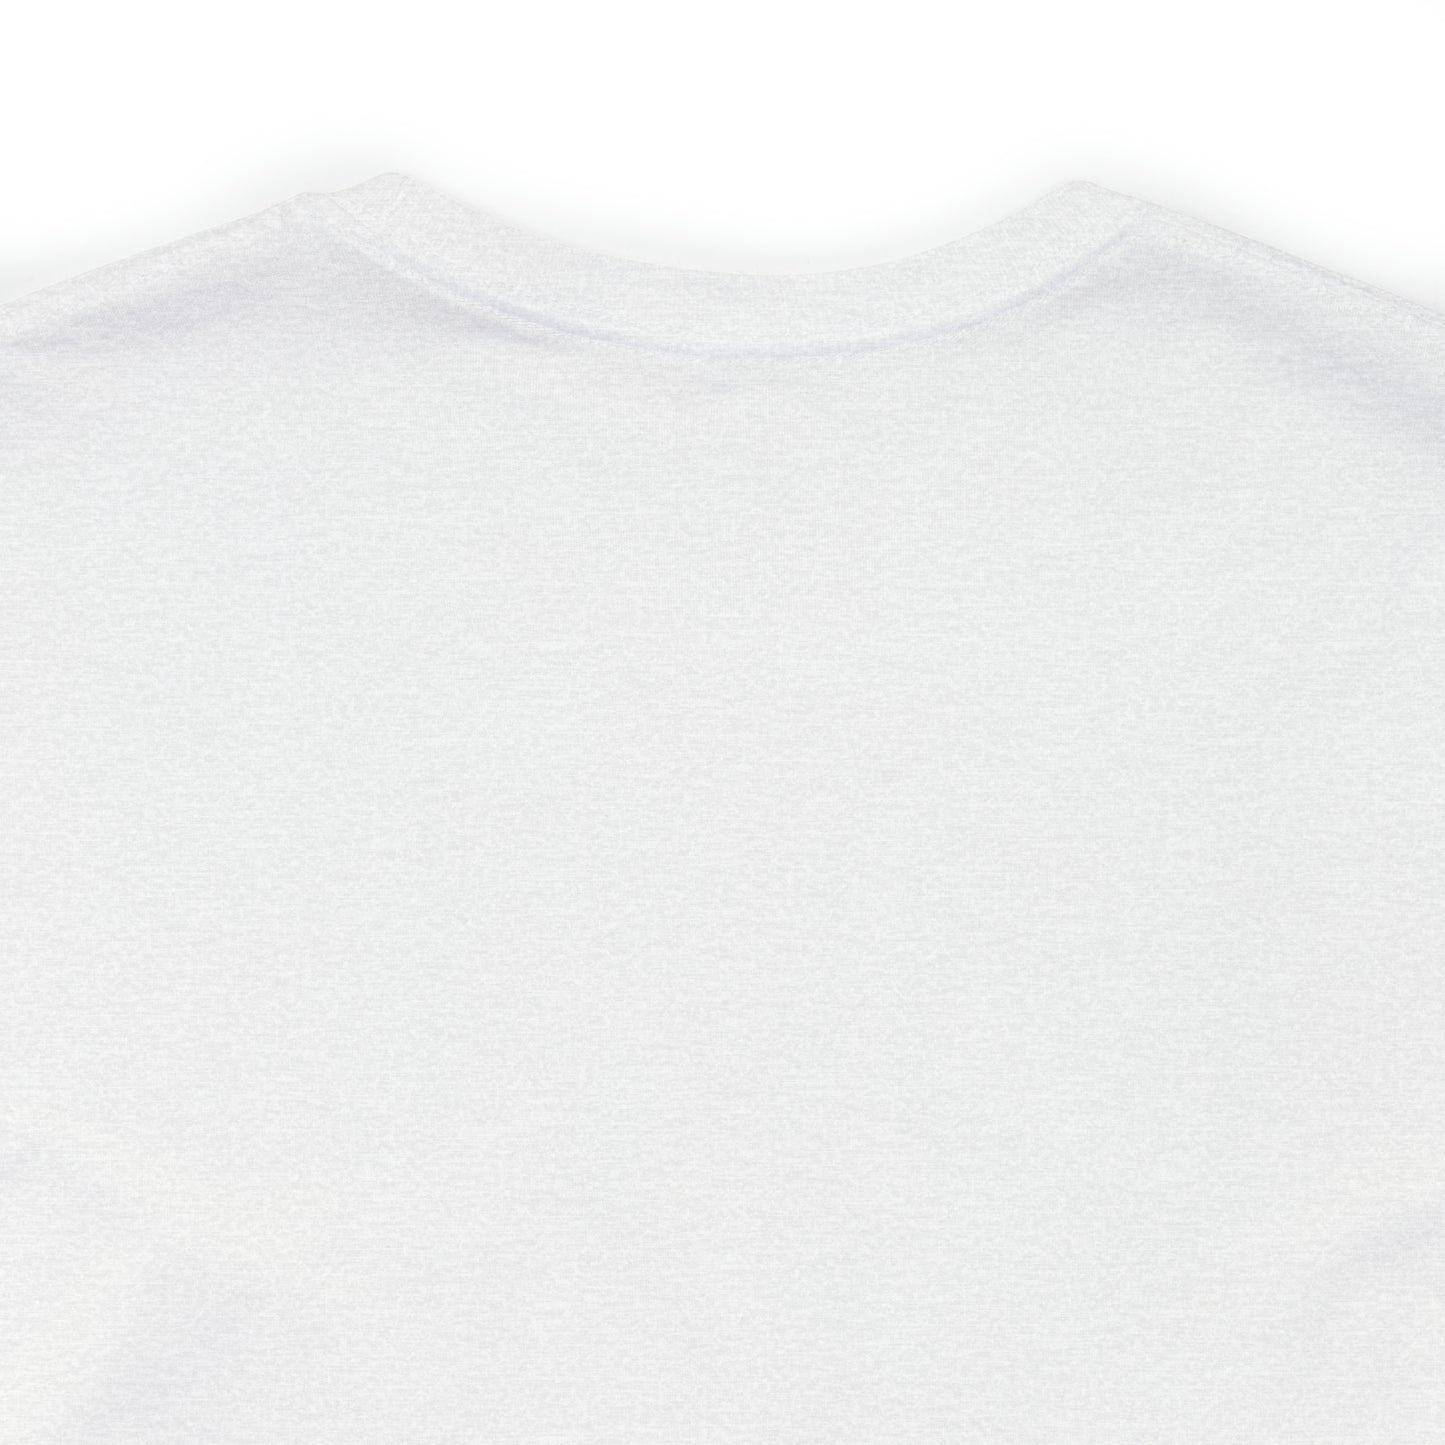 Attleboro, Mass Pickleball Short Sleeve T-Shirt